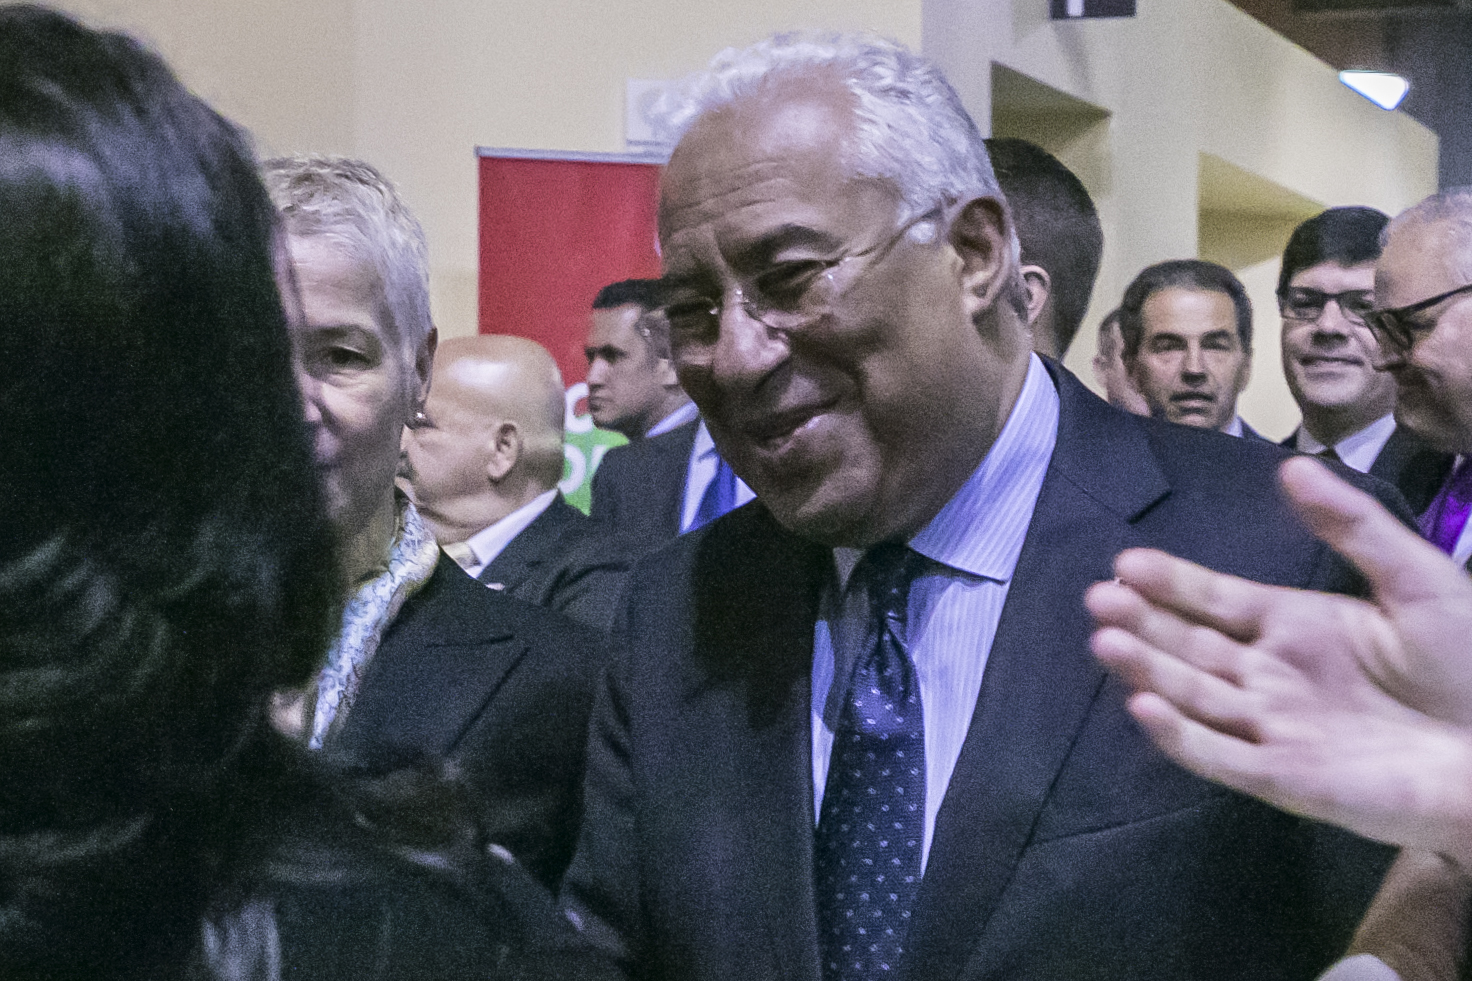 Event_2018 Portuguese Prime Minister Reception9979